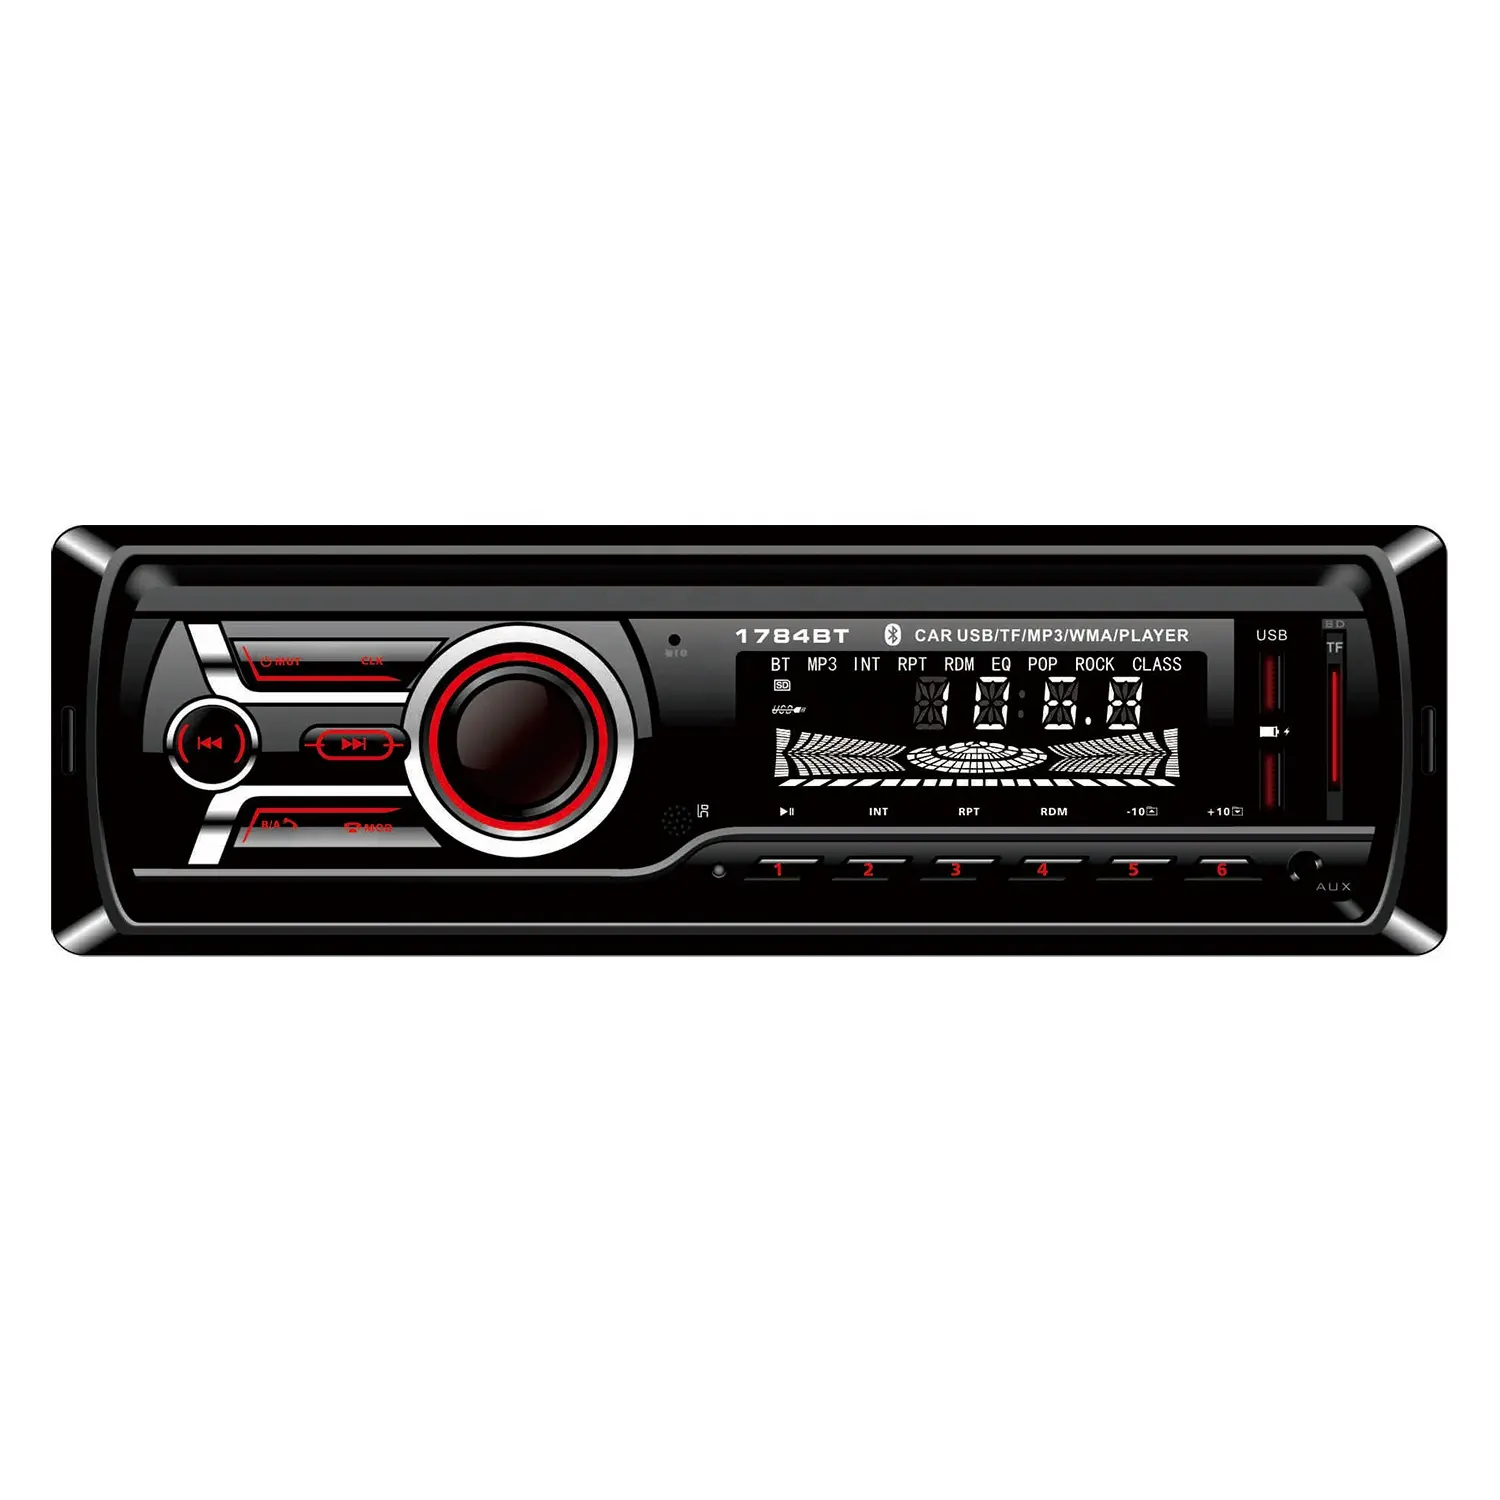 راديو سيارة ستريو MP3 مزود بمشغل أحادي دين متوفر بـ 7 ألوان راديو سيارة مزود بنظام ضبط الصوت DAB+FM ووصلة USB وبطاقة SD ووصلة AUX SWC يُباع بالجملة من المصنع مع دعم للبلوتوث وتنسيق WMA